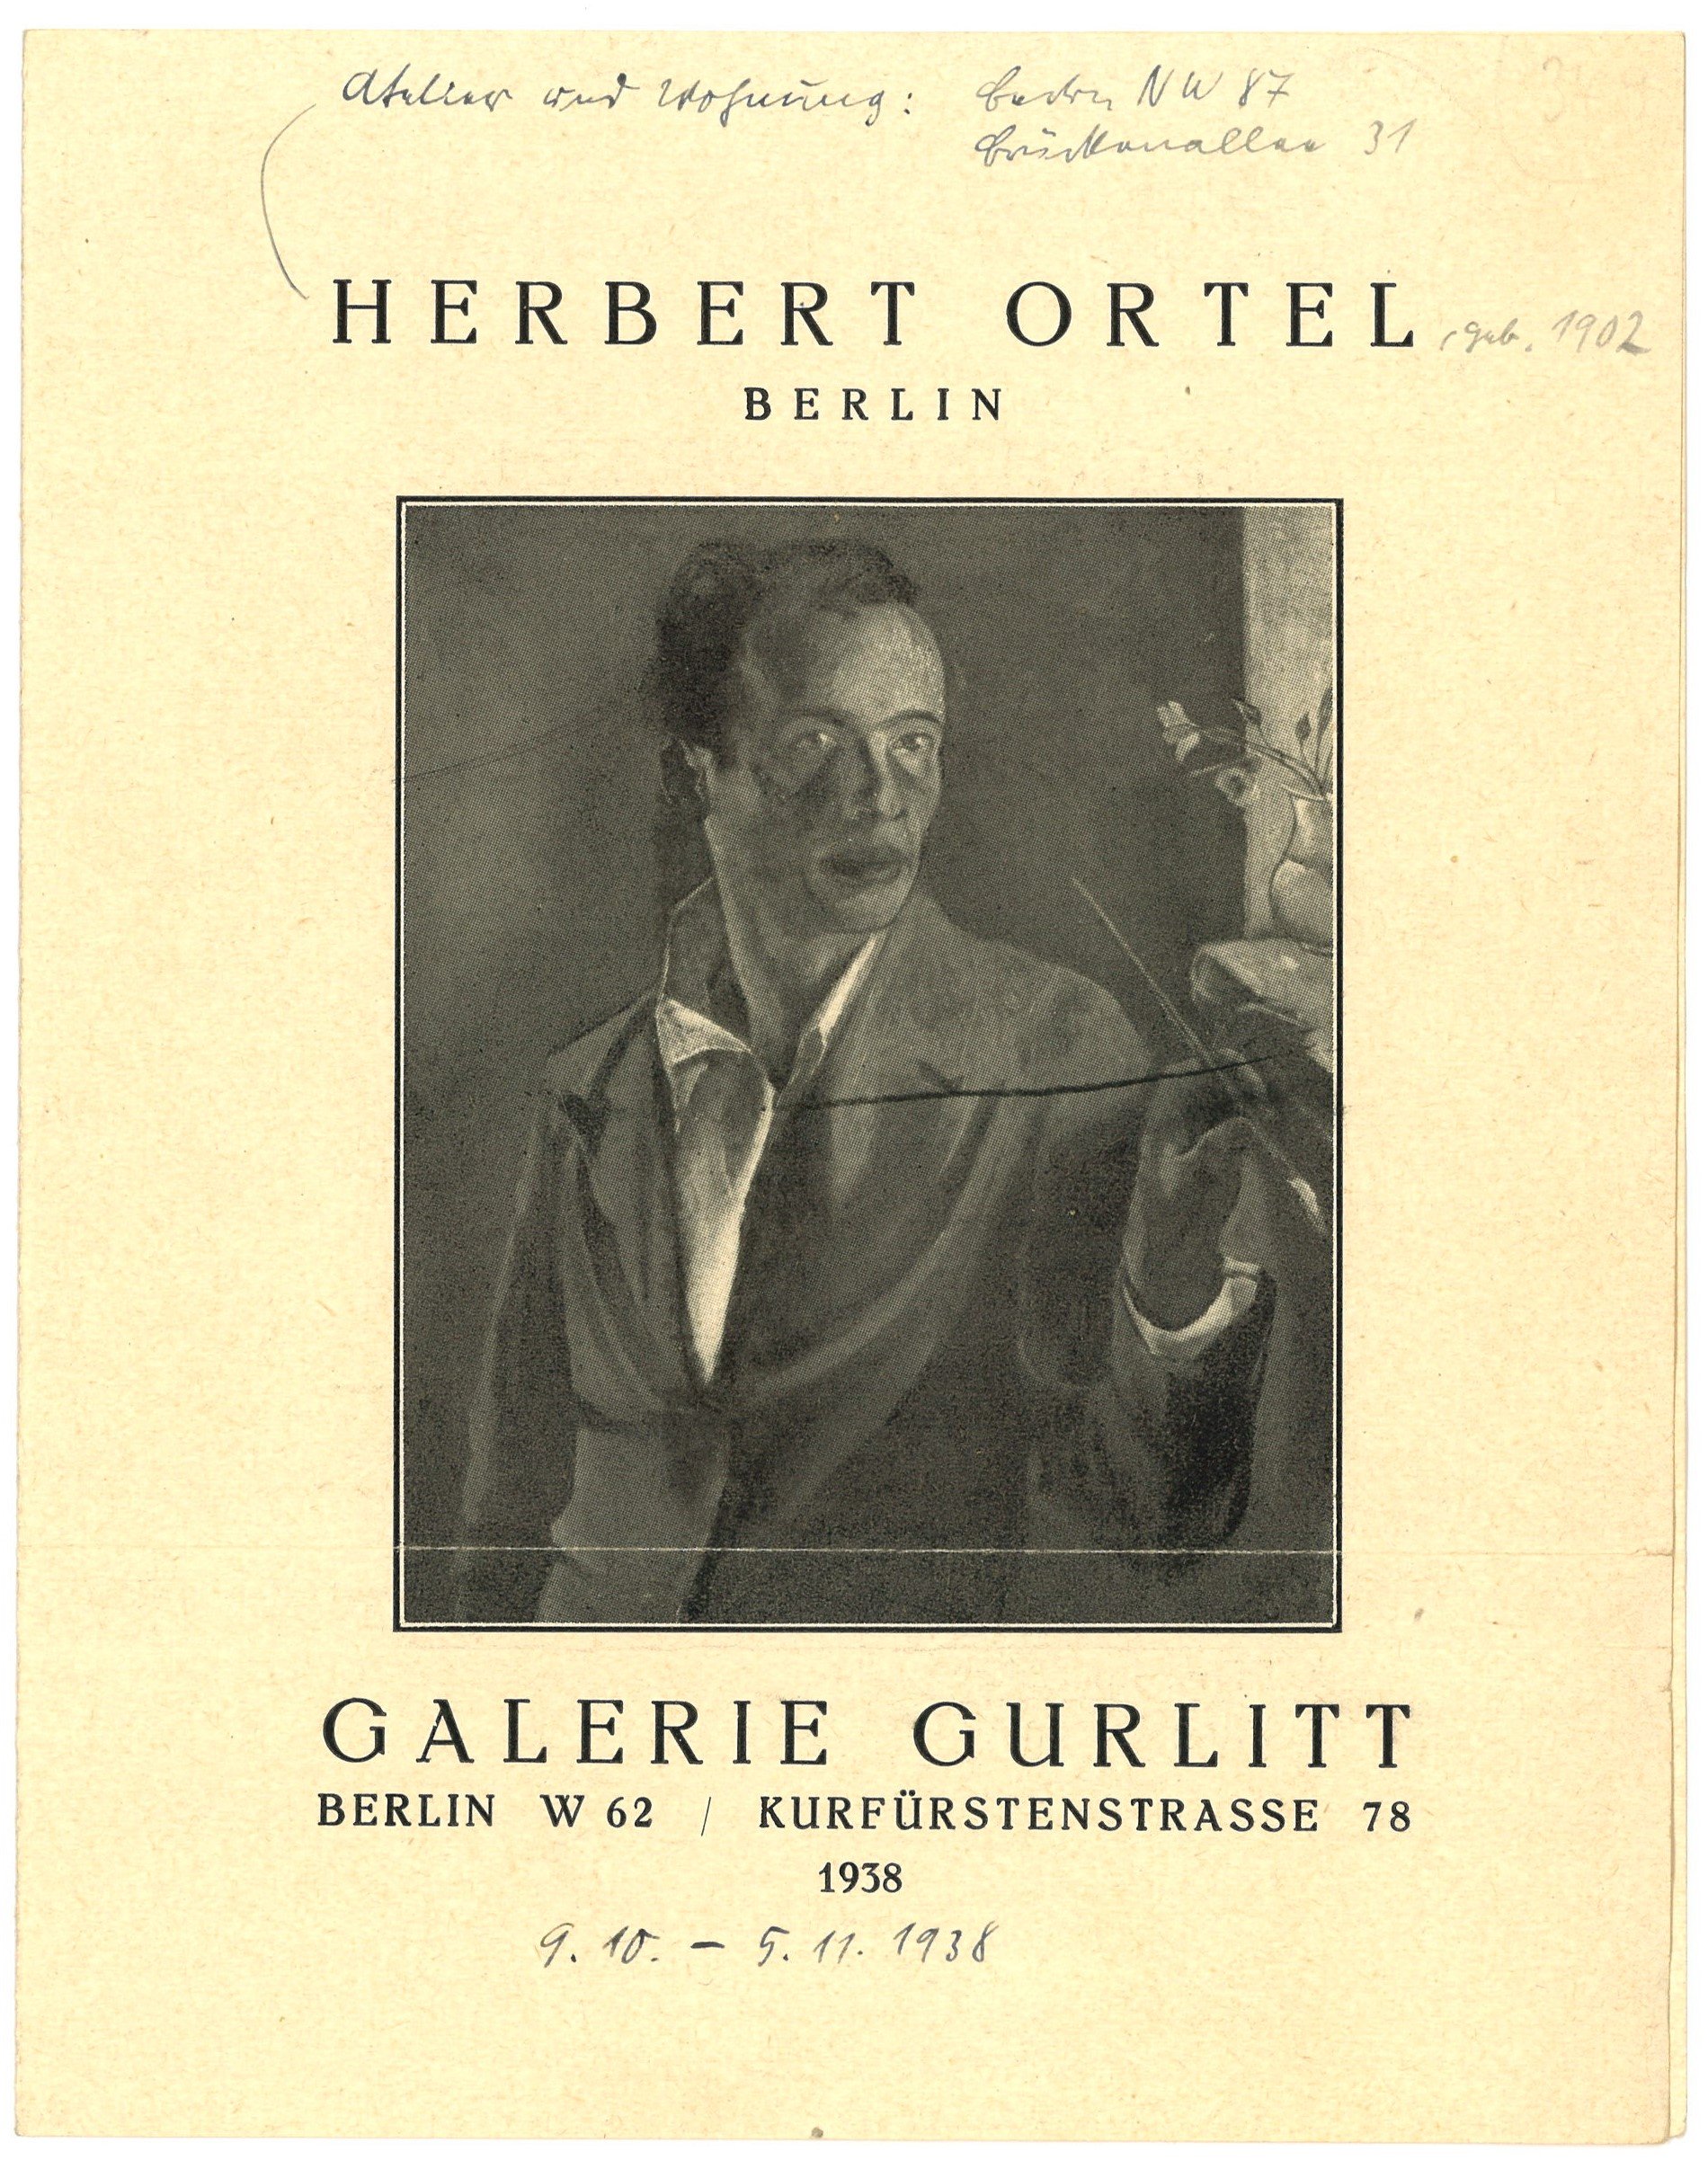 Faltblatt der Galerie Gurlitt in Berlin zur Ausstellung Herbert Ortel (1938) (Landesgeschichtliche Vereinigung für die Mark Brandenburg e.V., Archiv CC BY)